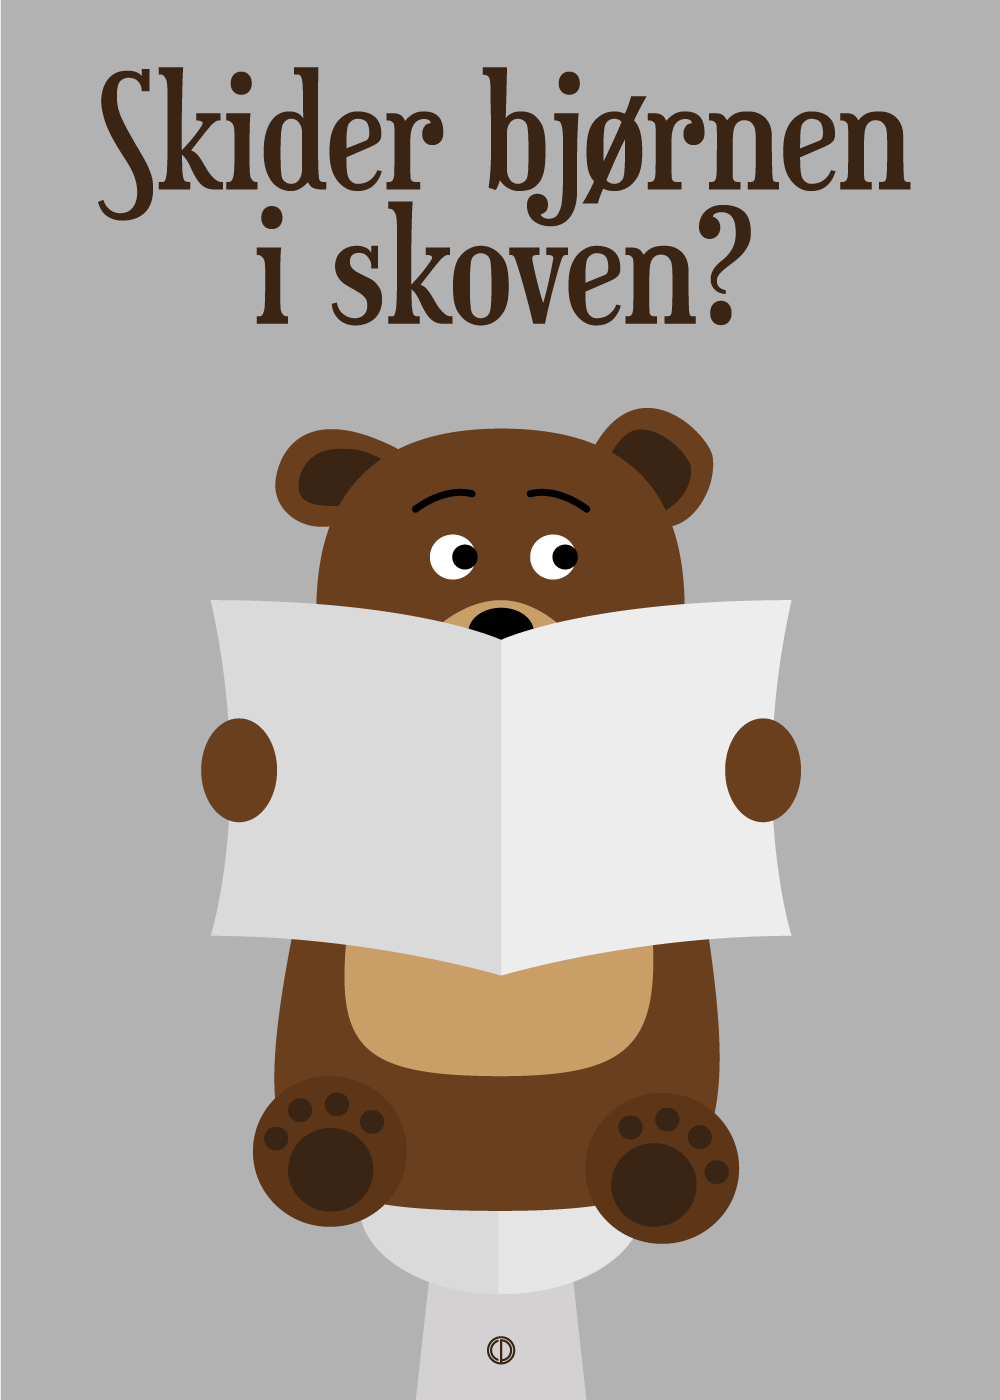 Skider bjørnen i skoven?